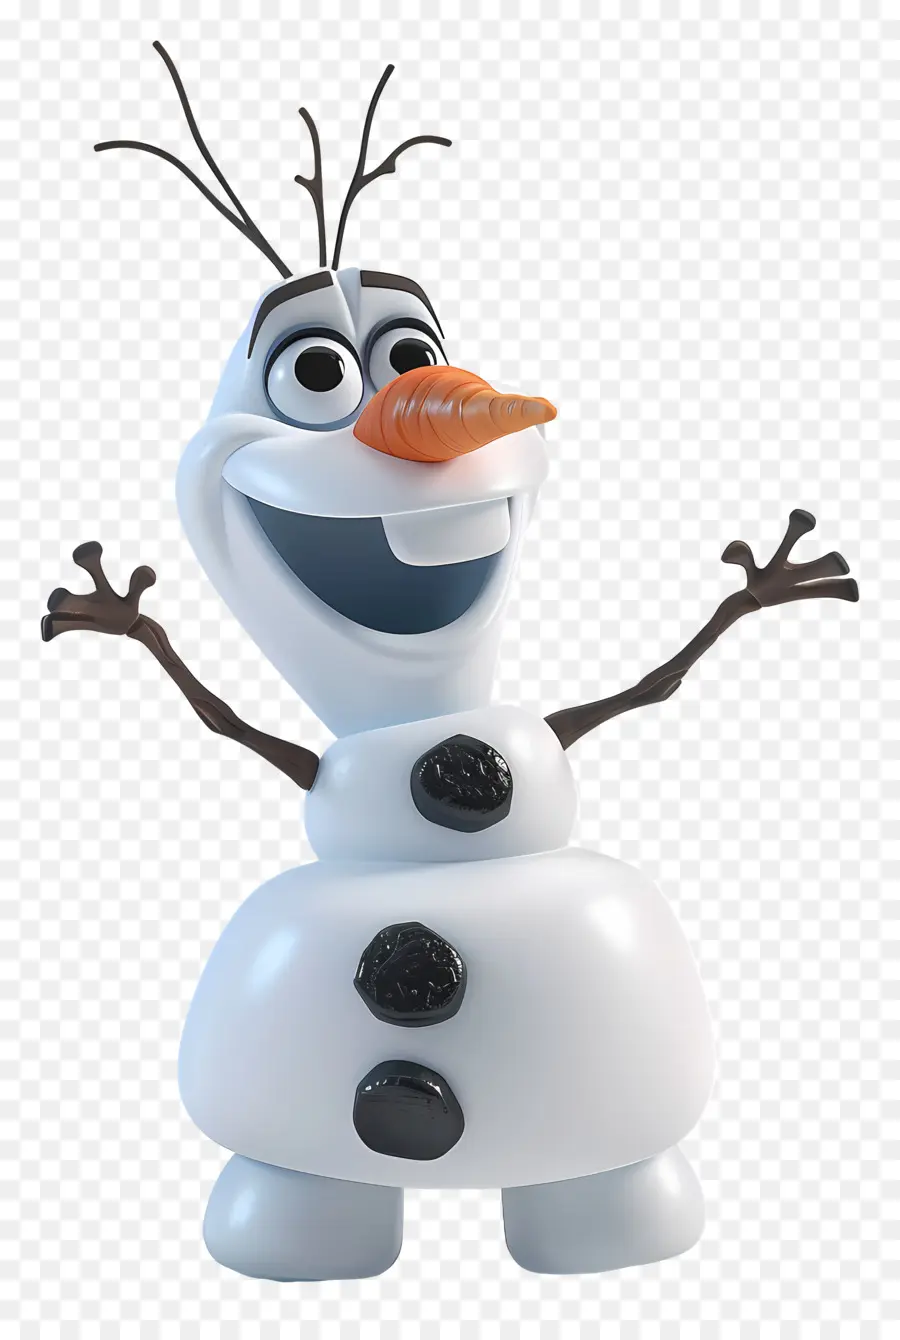 đông lạnh olaf - Olaf từ Frozen với Mũ và khăn màu xanh